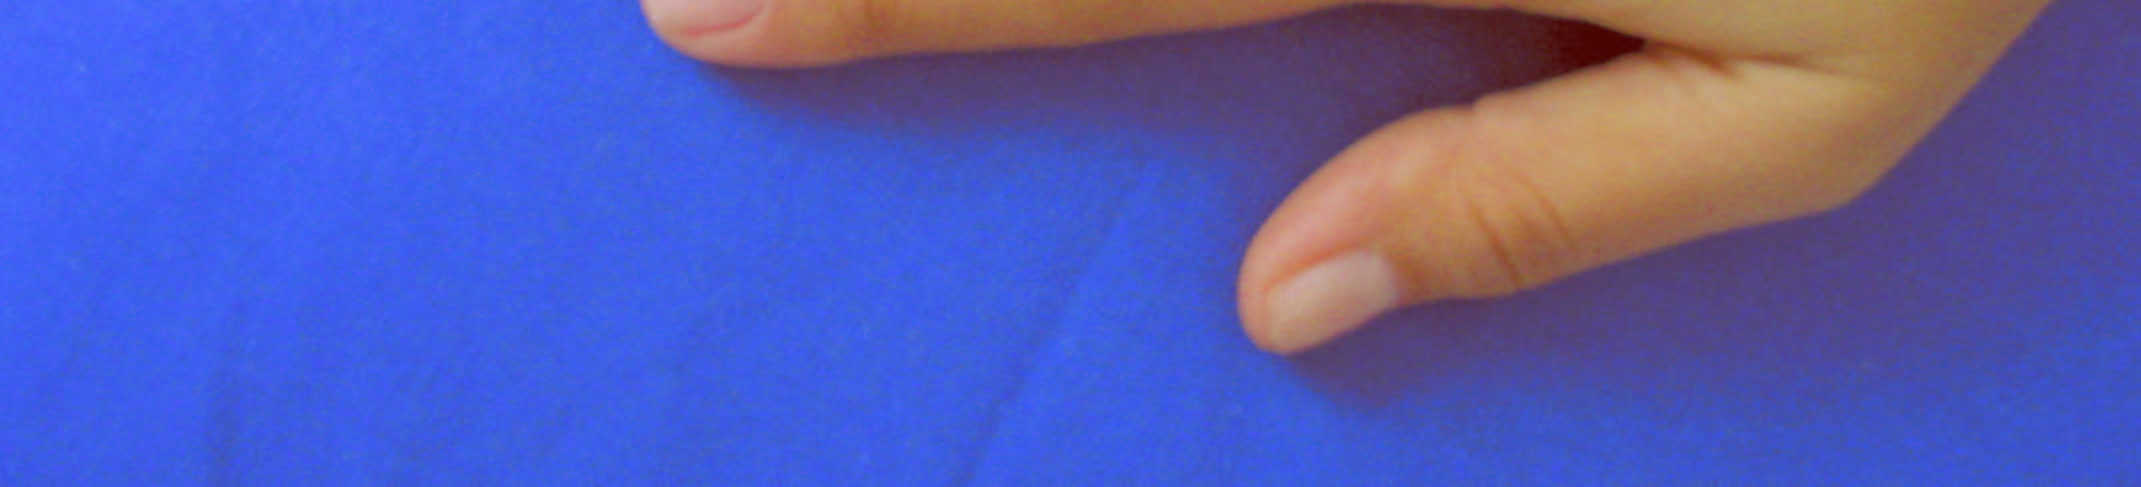 54 4. Comprimento do Dedo Médio: É a distância em linha reta entre o phalangion e o daktilion desse dedo (Figuras 23 e 24); Figura 23: